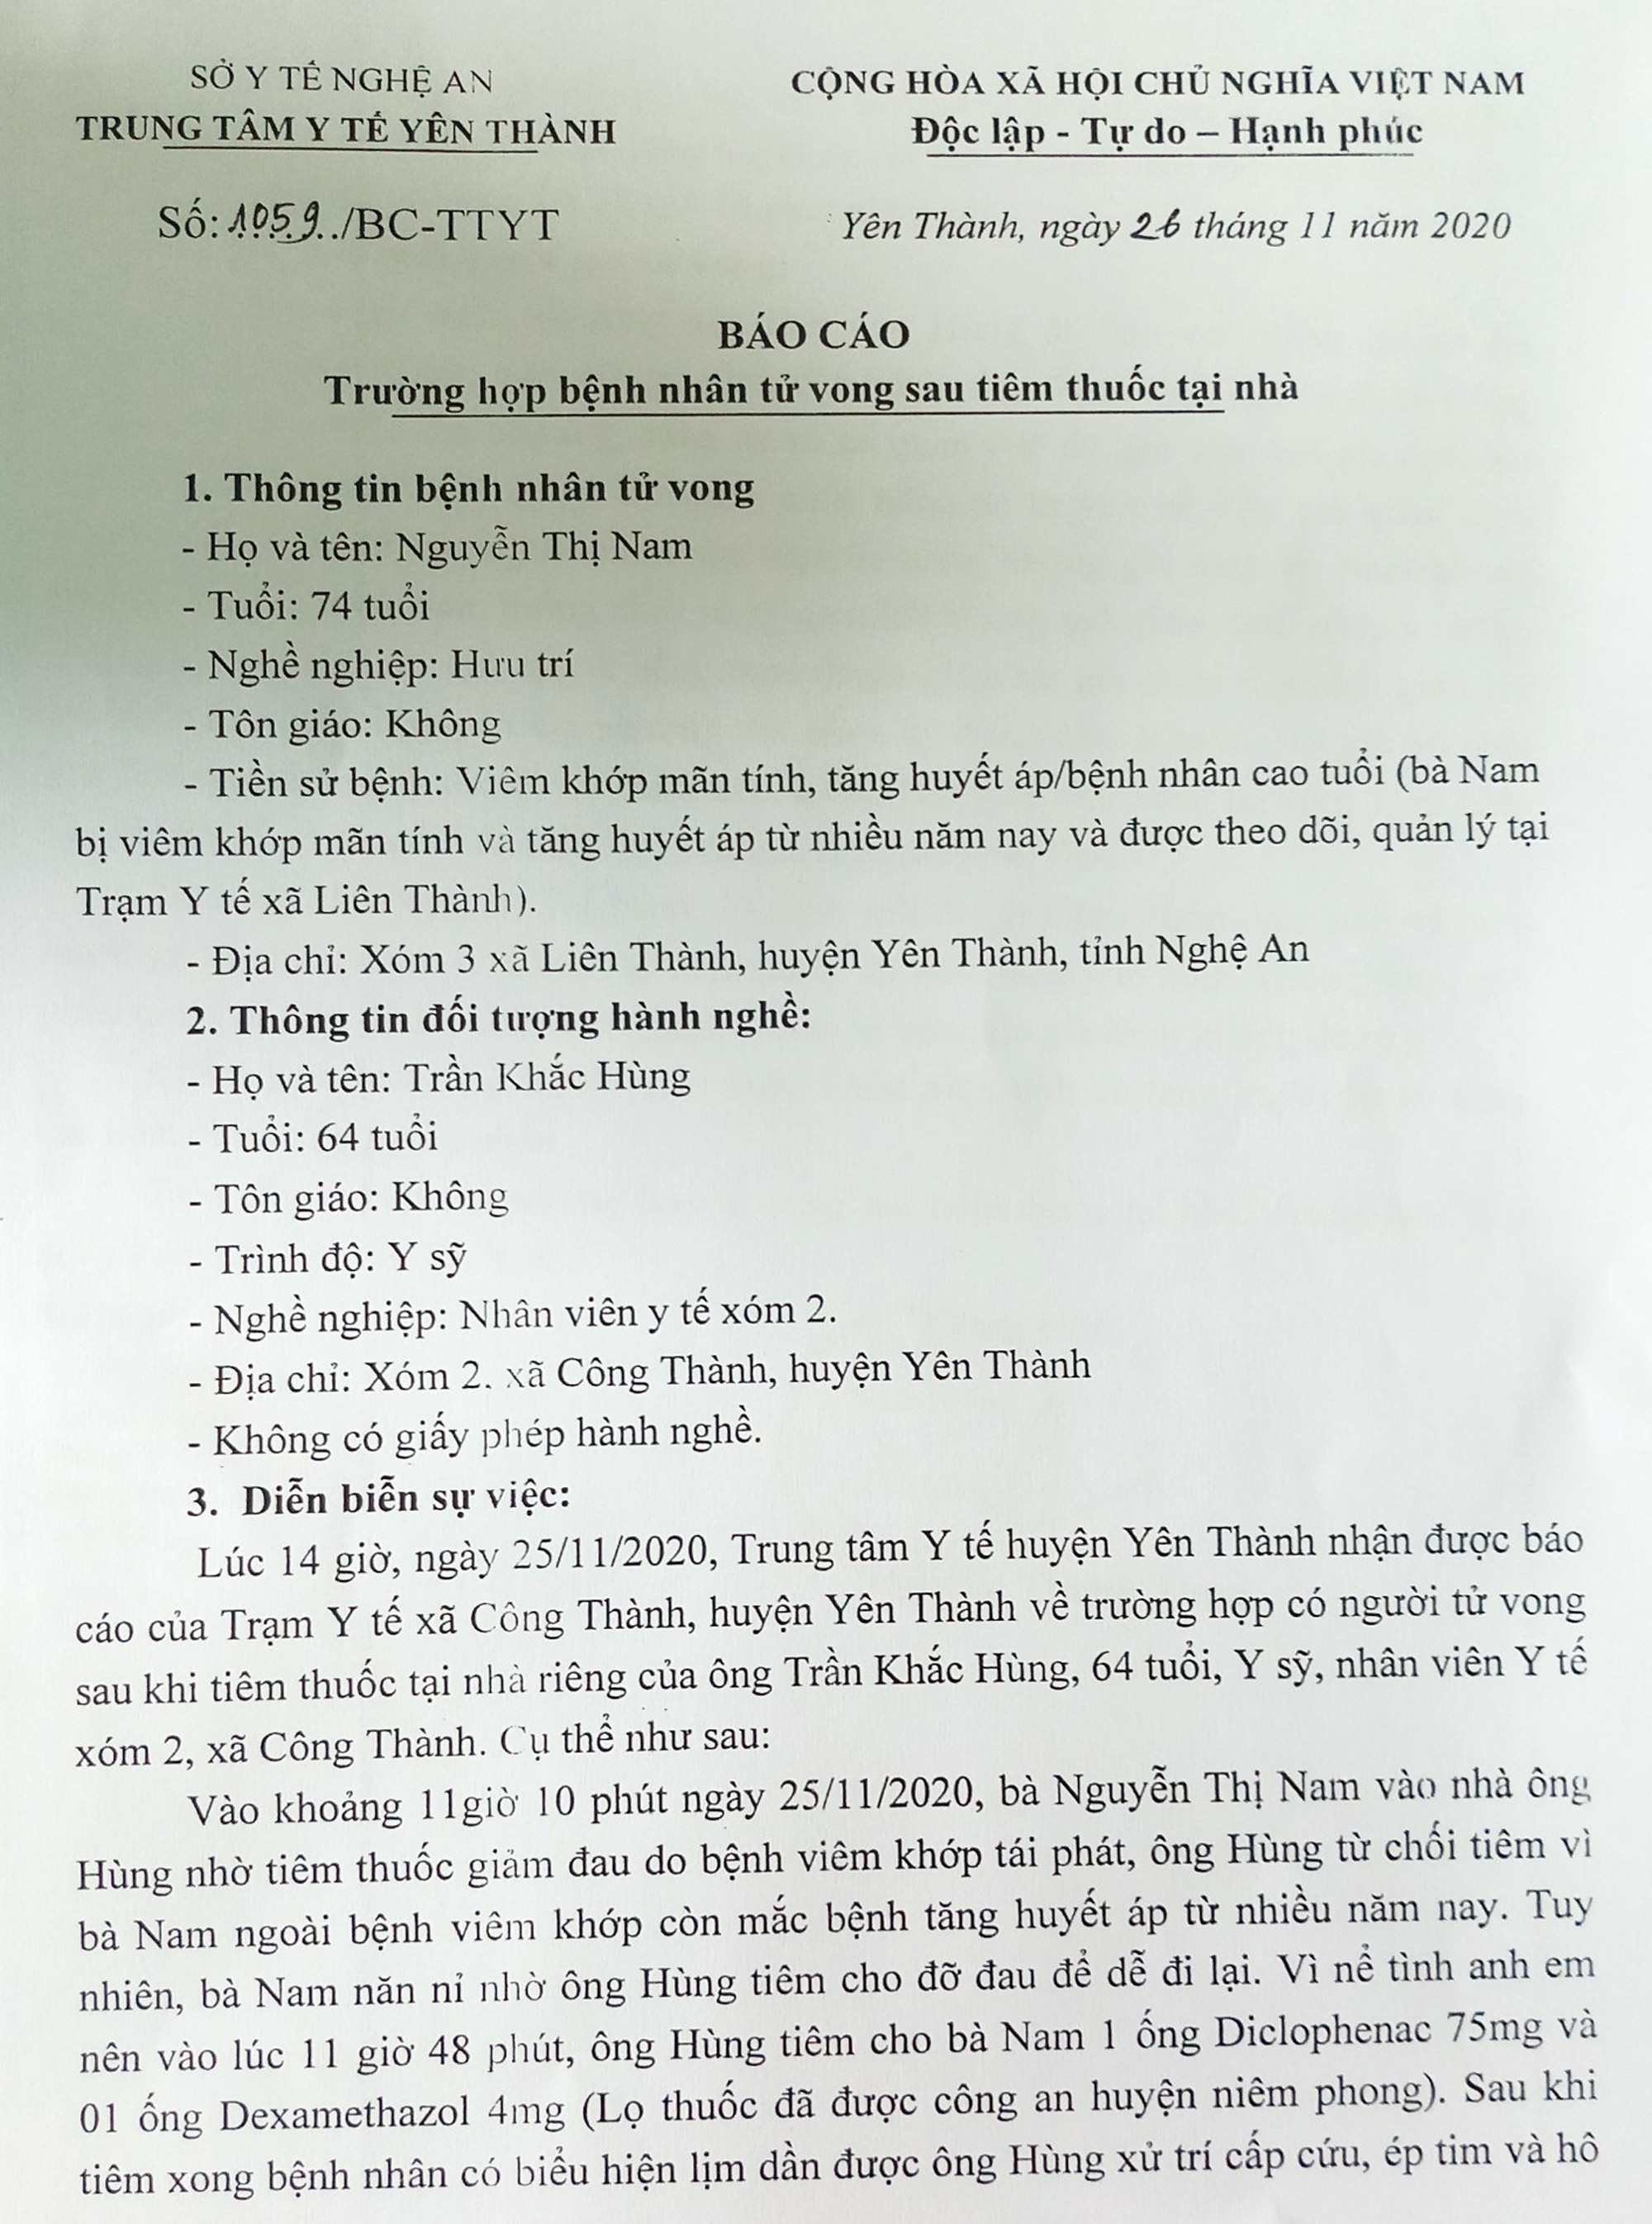 Báo cáo của Trung tâm Y tế huyện Yên Thành về vụ việc. Ảnh: Thành Chung